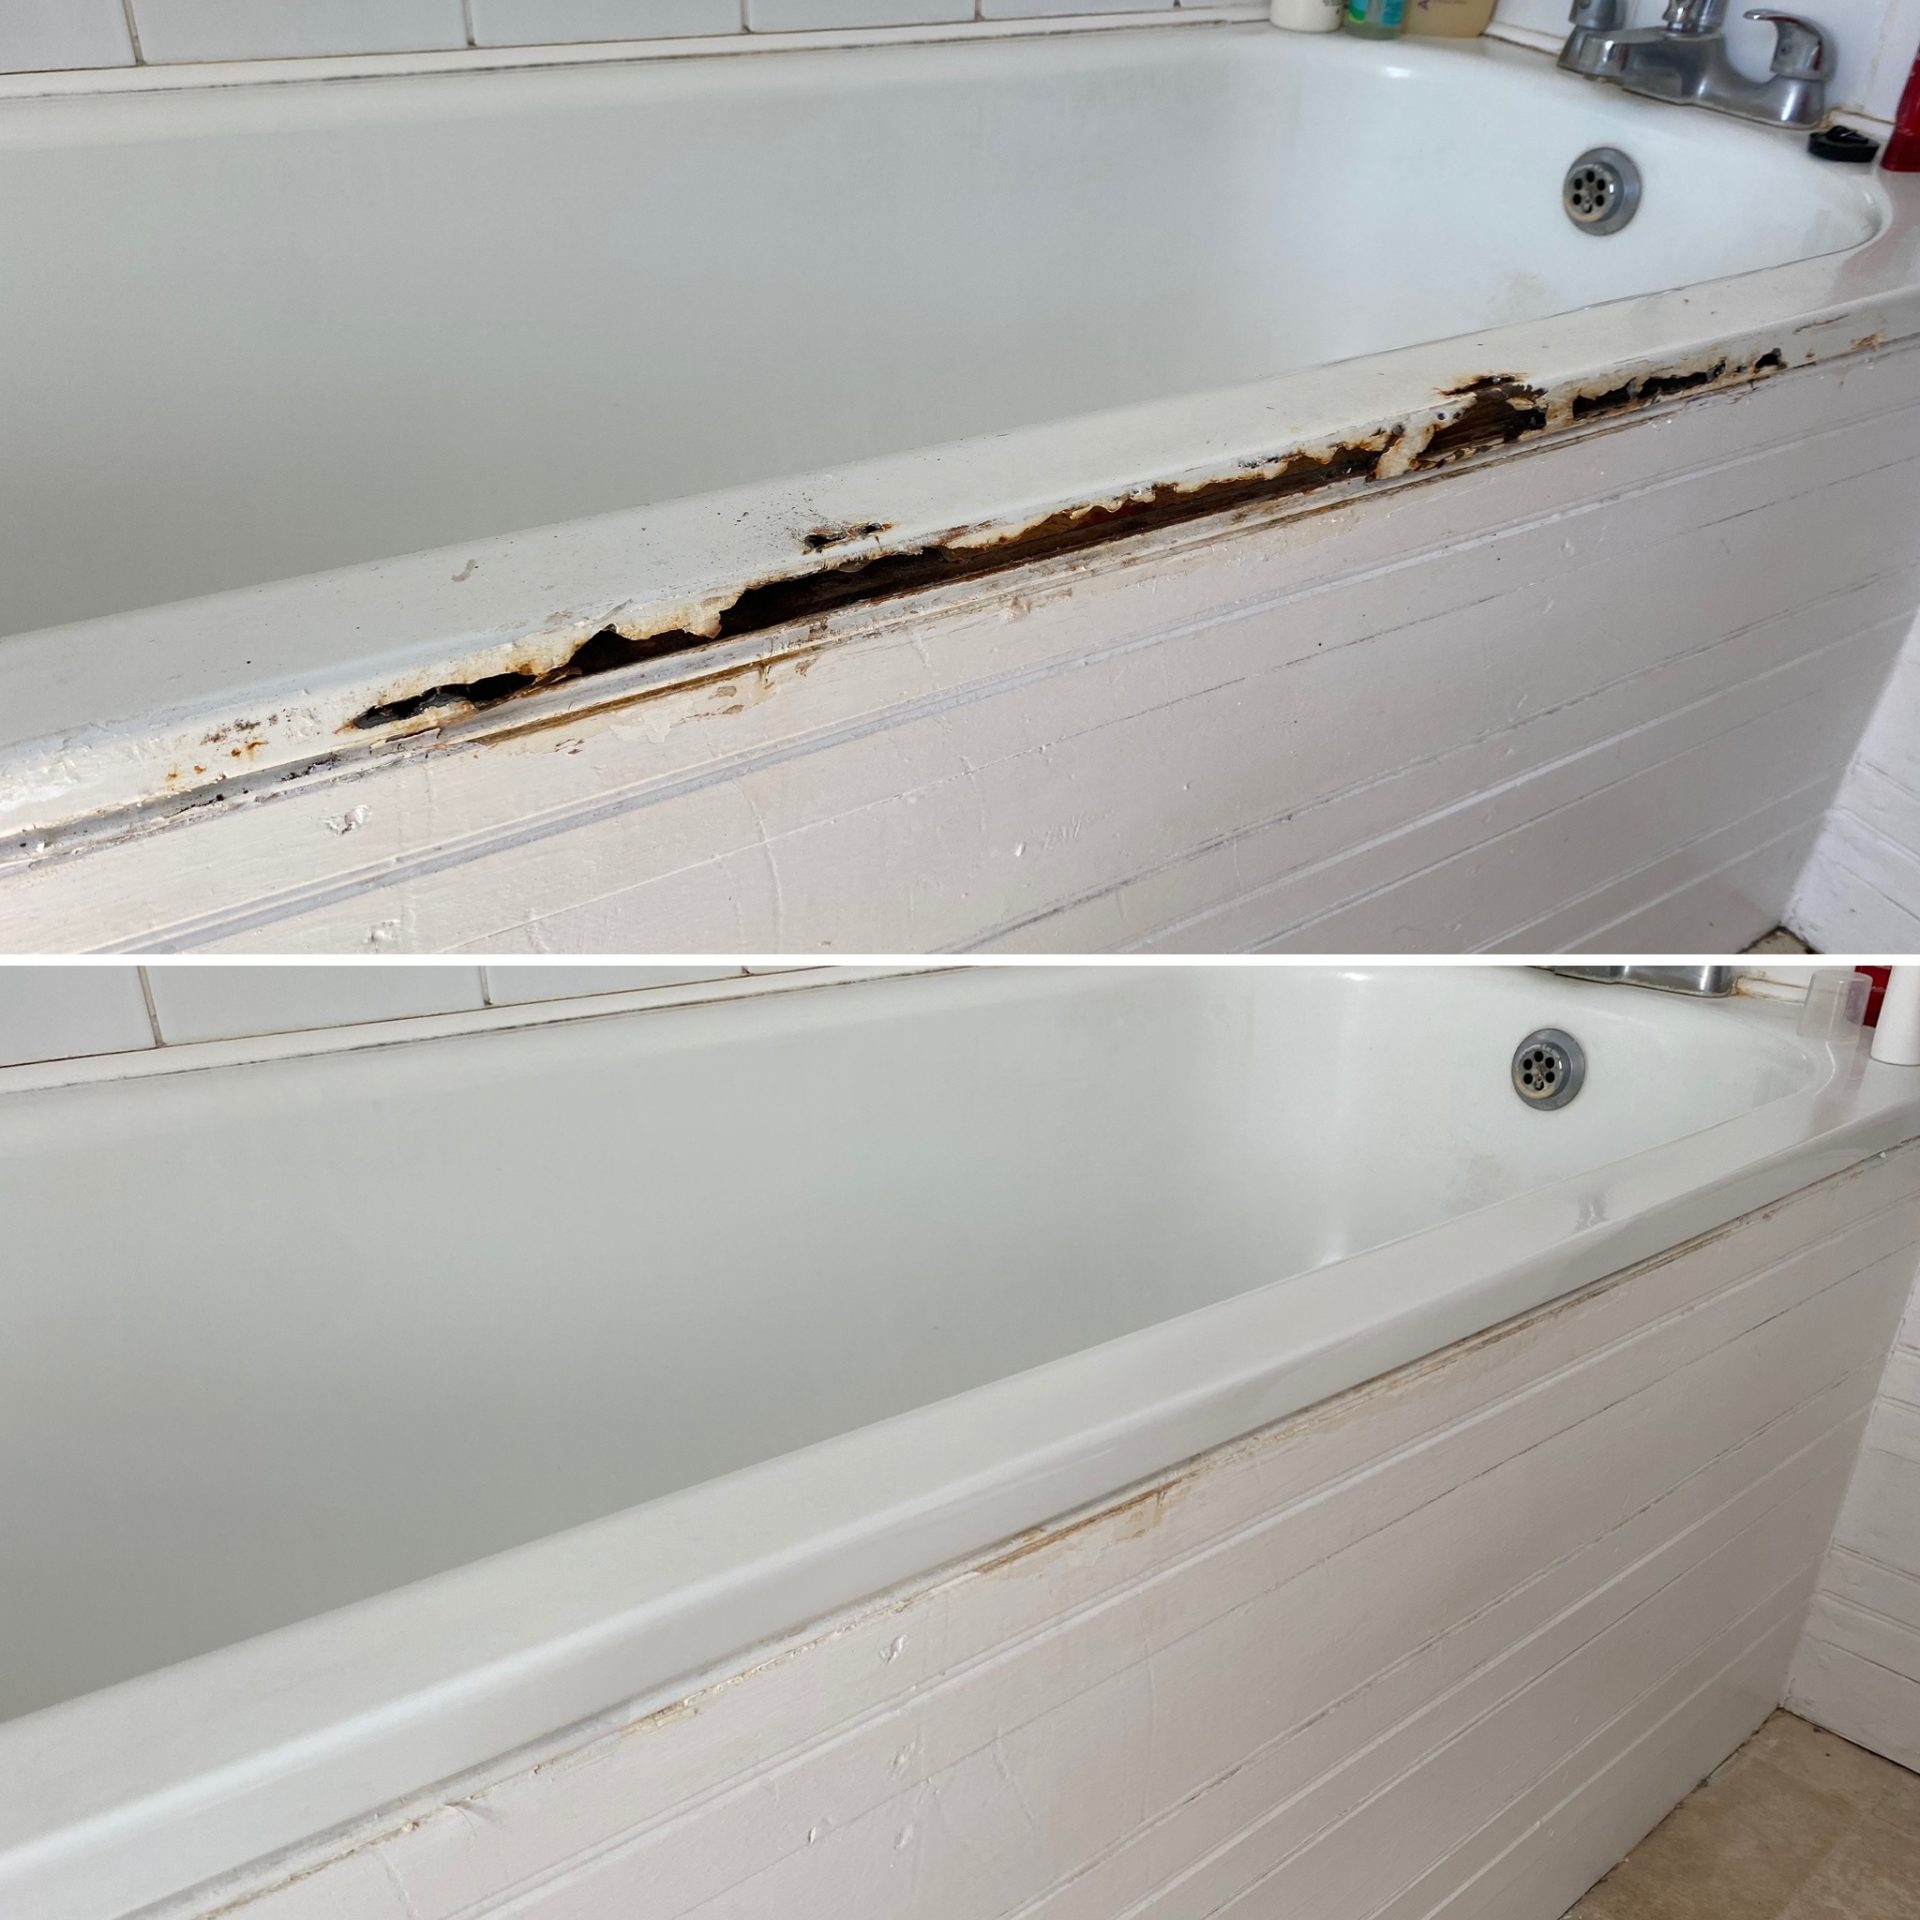 Badly Rusted Bath